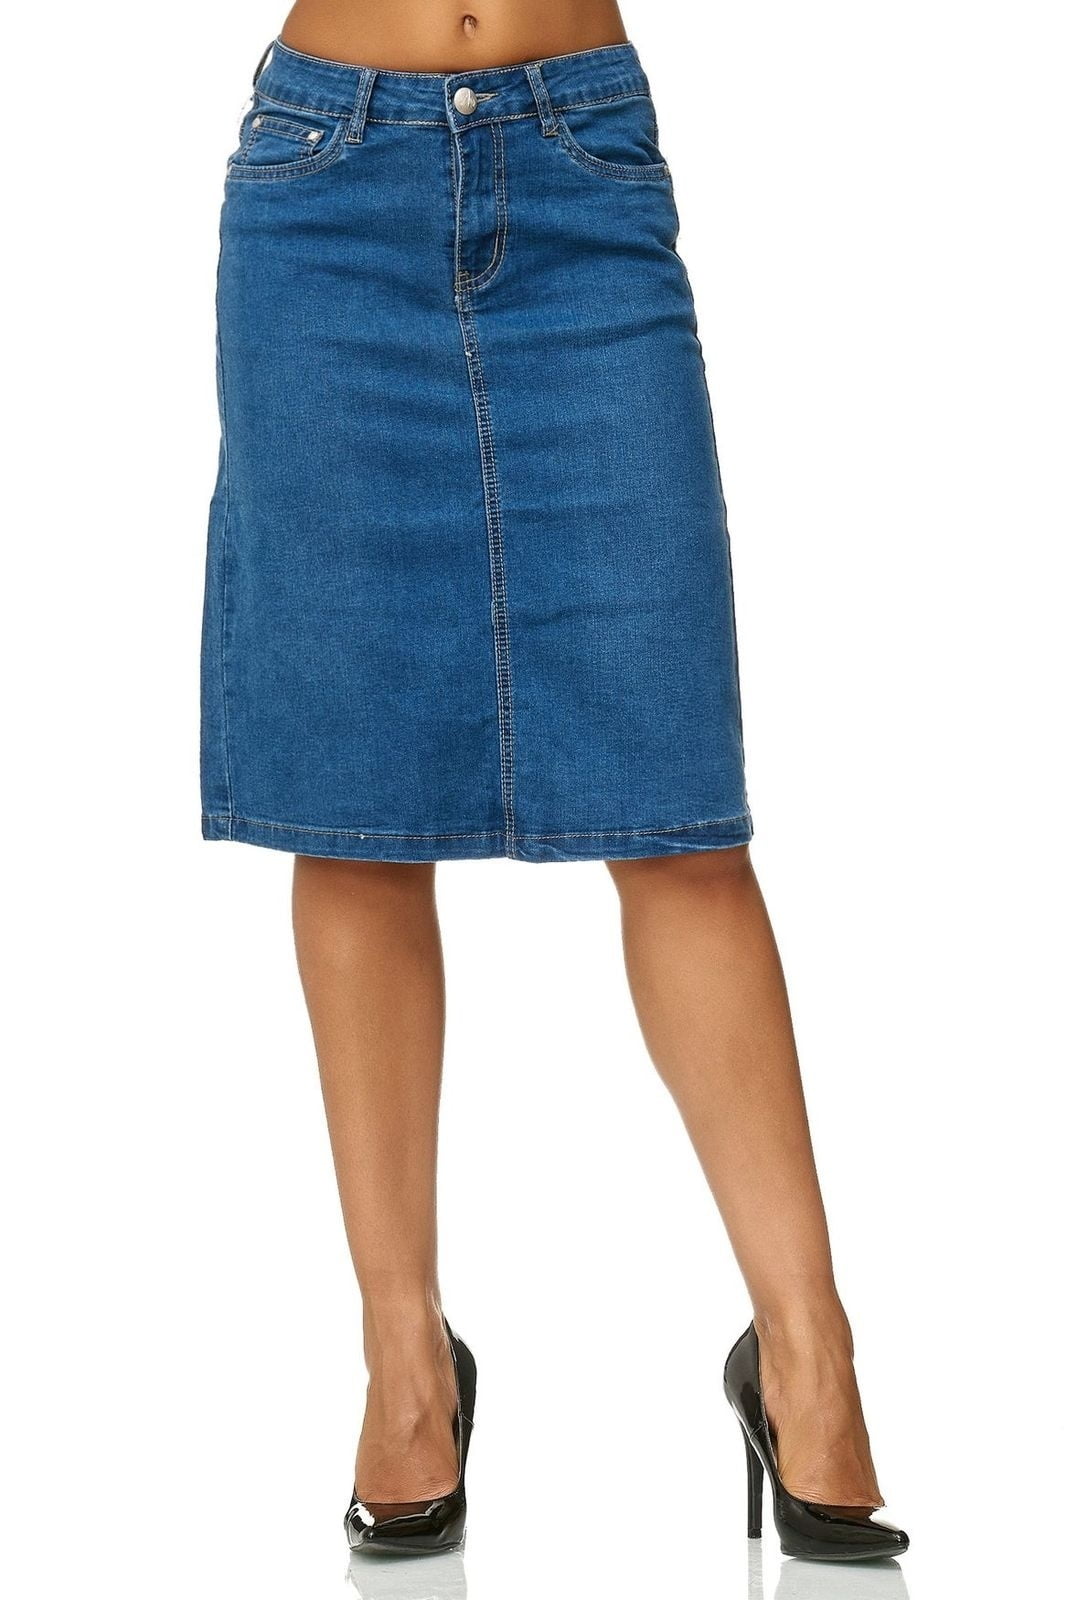 Women's denim skirt size M knee length 